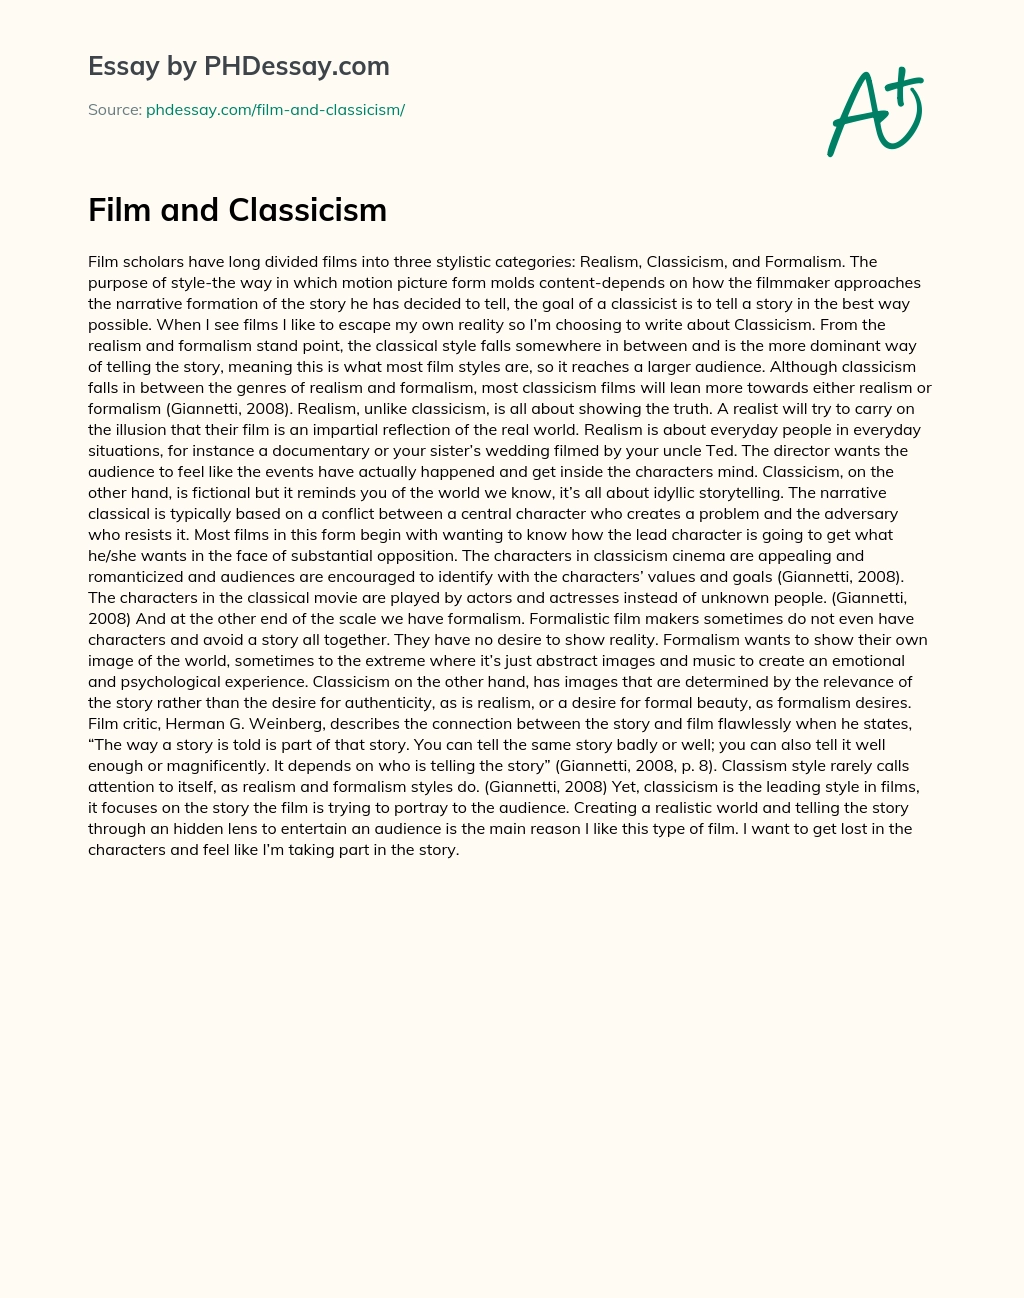 Film and Classicism essay